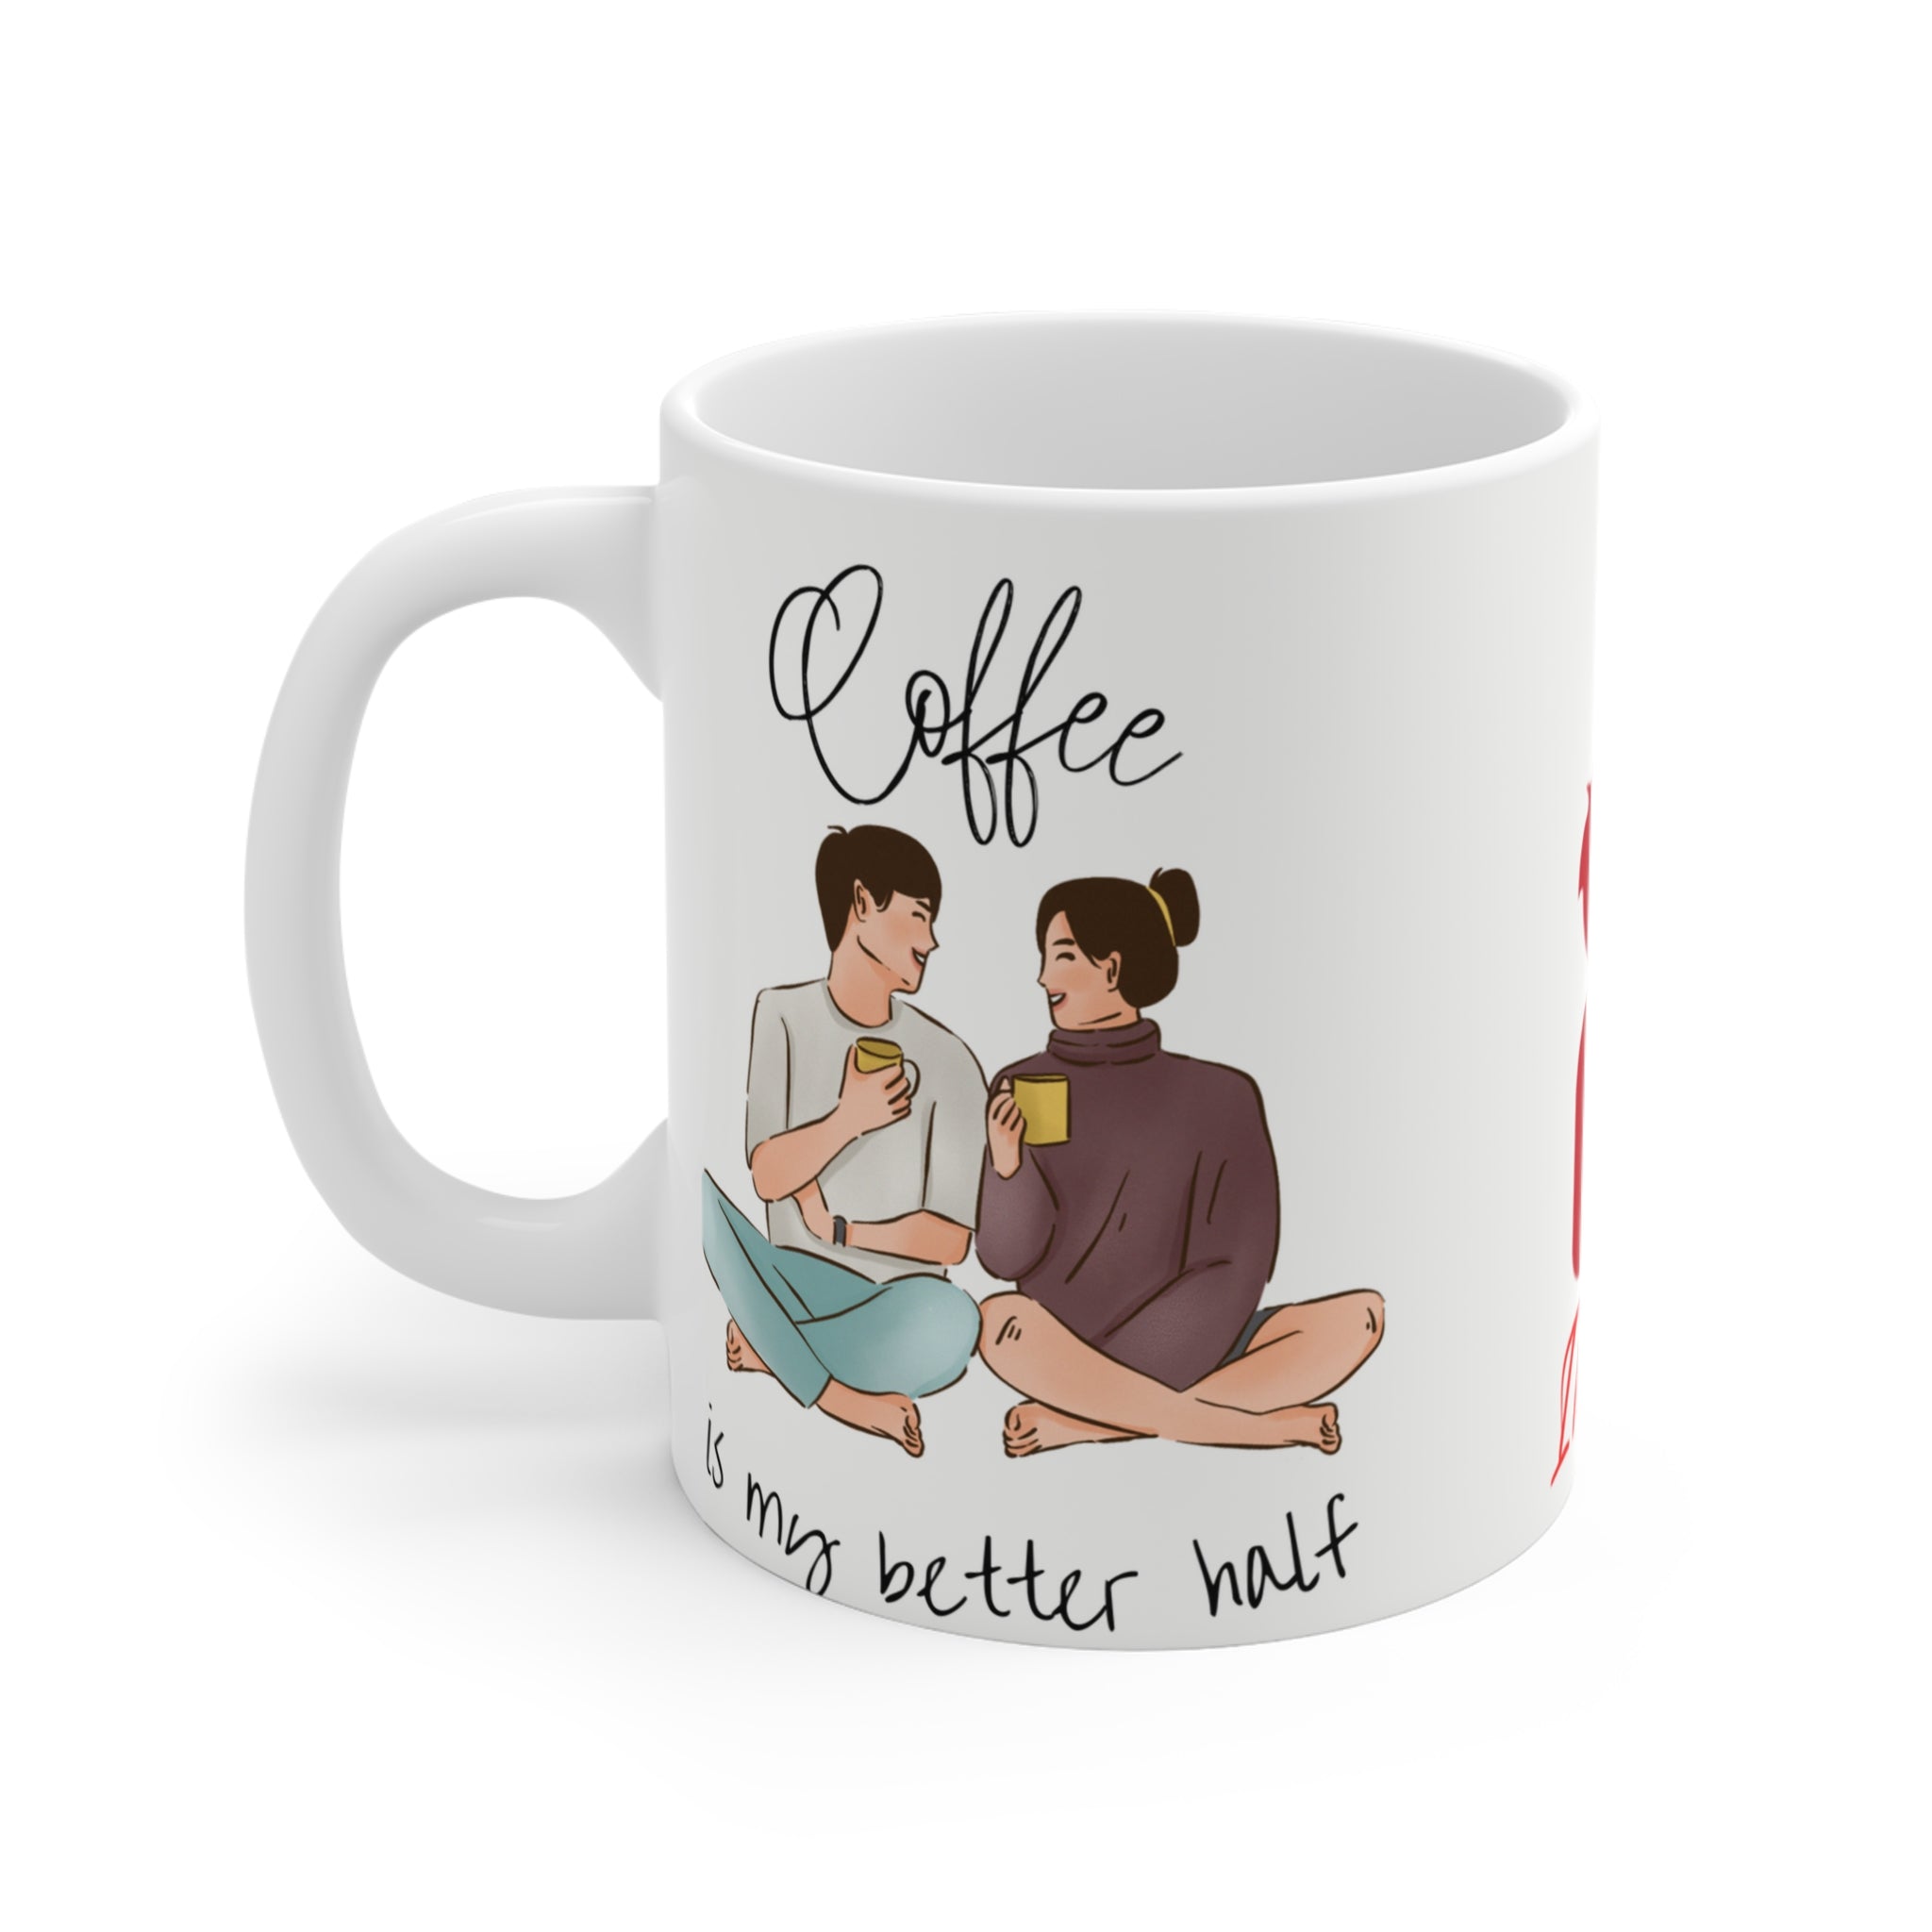 Coffee and Better Half | Printed Coffee Mug | 11 Oz